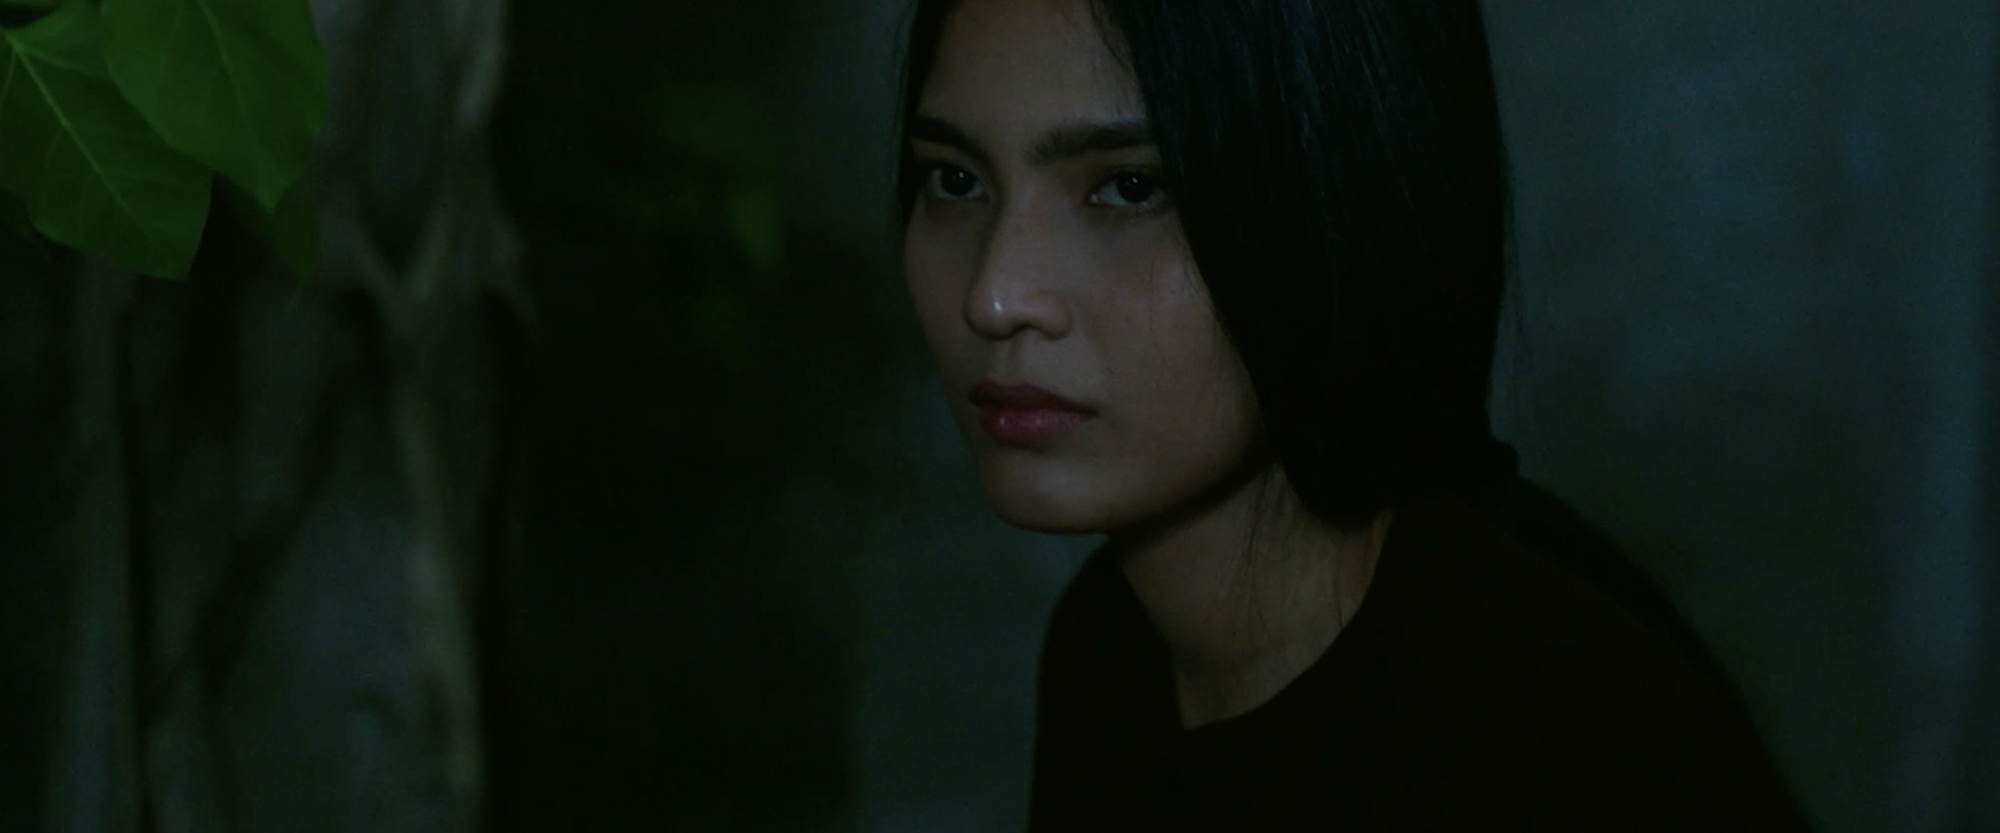 Trương Thị May tái xuất màn ảnh rộng với vai diễn bí ẩn - Ảnh 2.